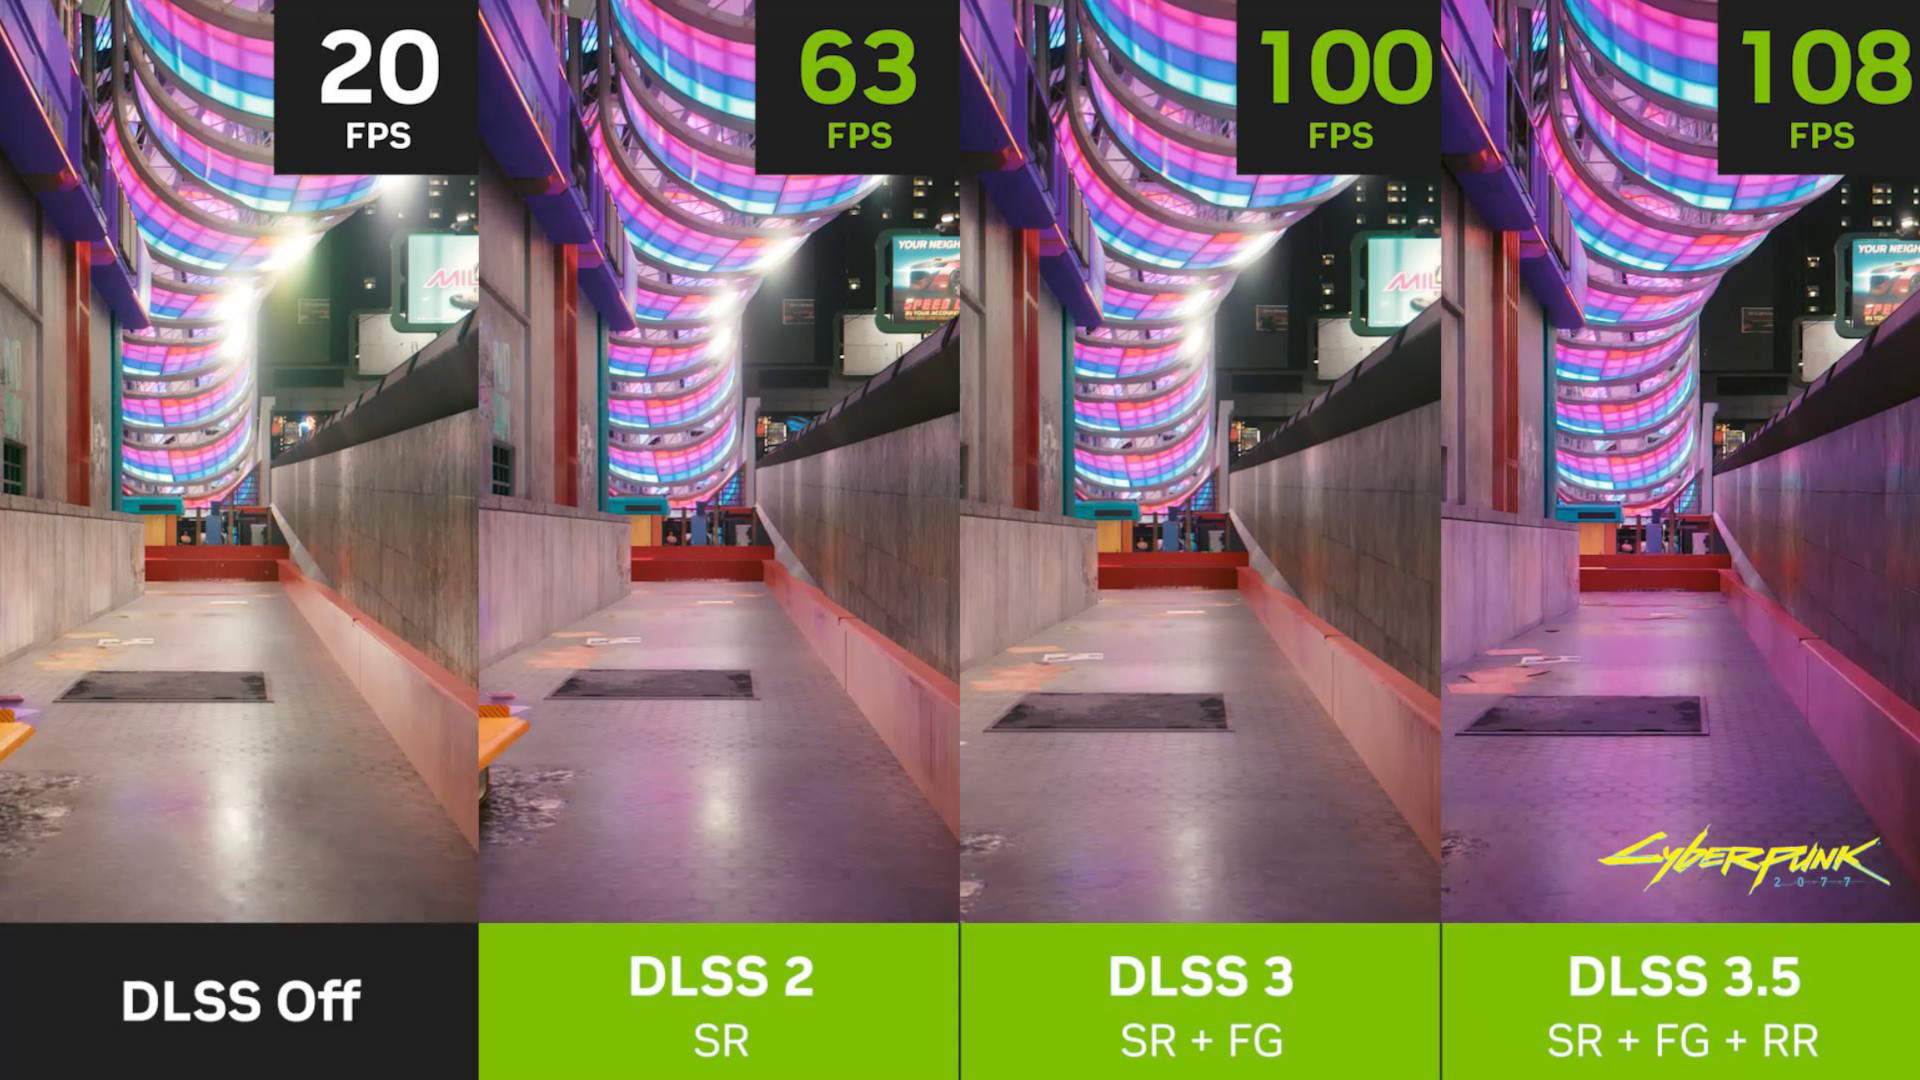 Nvidia DLSS 3.5: cuatro imágenes de Cyberpunk 2077, en las que DLSS está apagado y ejecutándose a 20 fps (izquierda), DLSS 2 está encendido y ejecutándose a 63 fps (centro izquierda), DLSS 3 está encendido y ejecutándose a 100 fps (centro derecha), y DLSS 3.5 está encendido y funcionando a 108 fps (derecha)